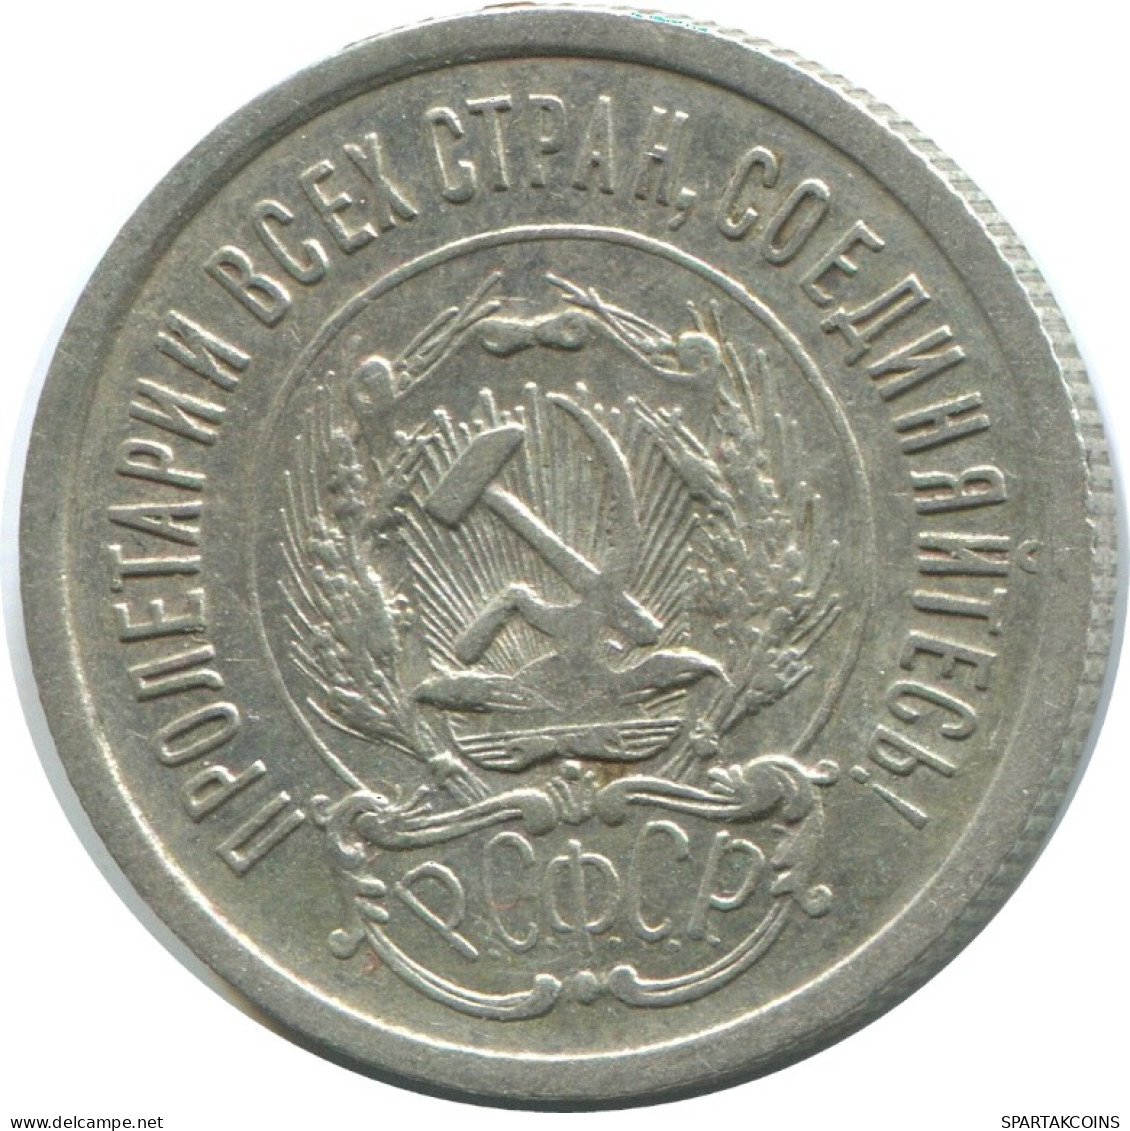 20 KOPEKS 1923 RUSSIA RSFSR SILVER Coin HIGH GRADE #AF530.4.U.A - Russland